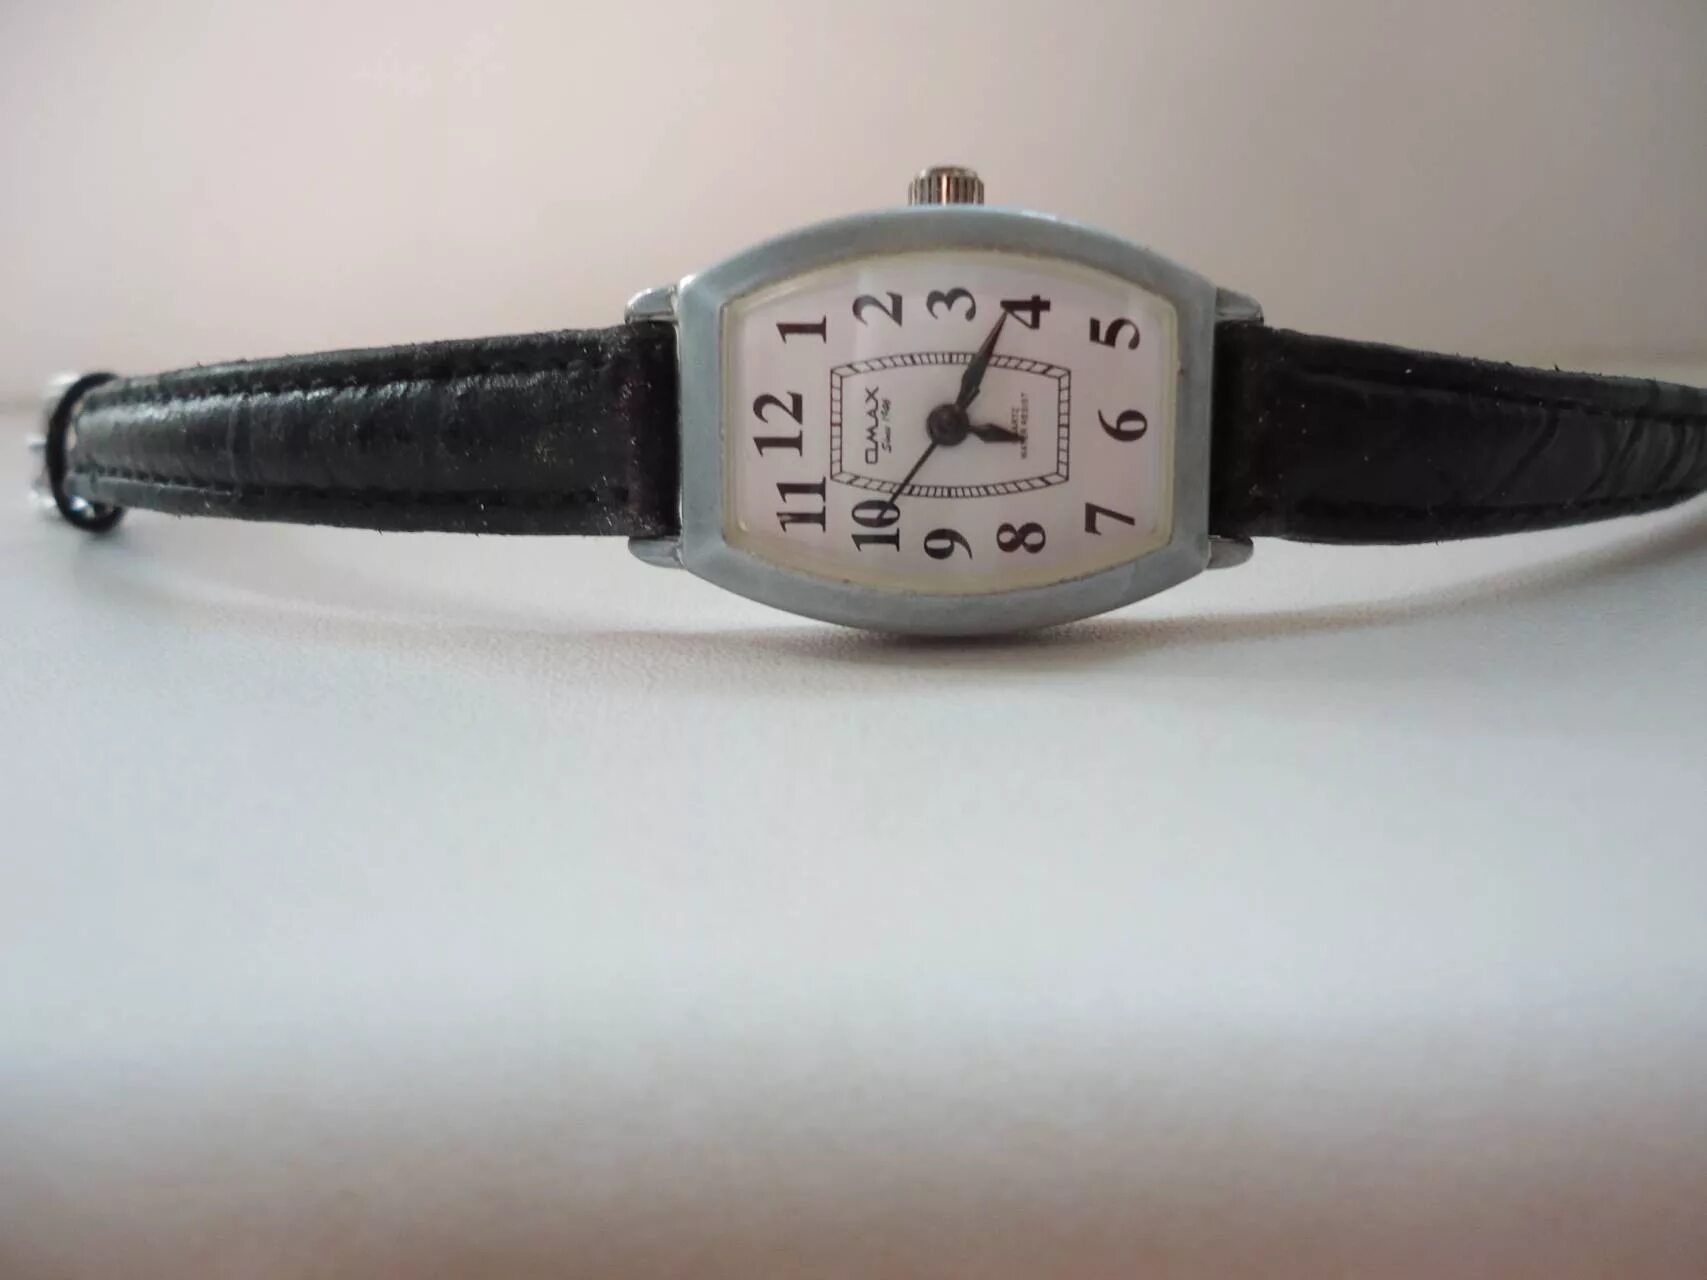 Omax since 1946. Наручные часы омакс 1946. Qmax часы since 1946. Наручные часы OMAX since 1946.